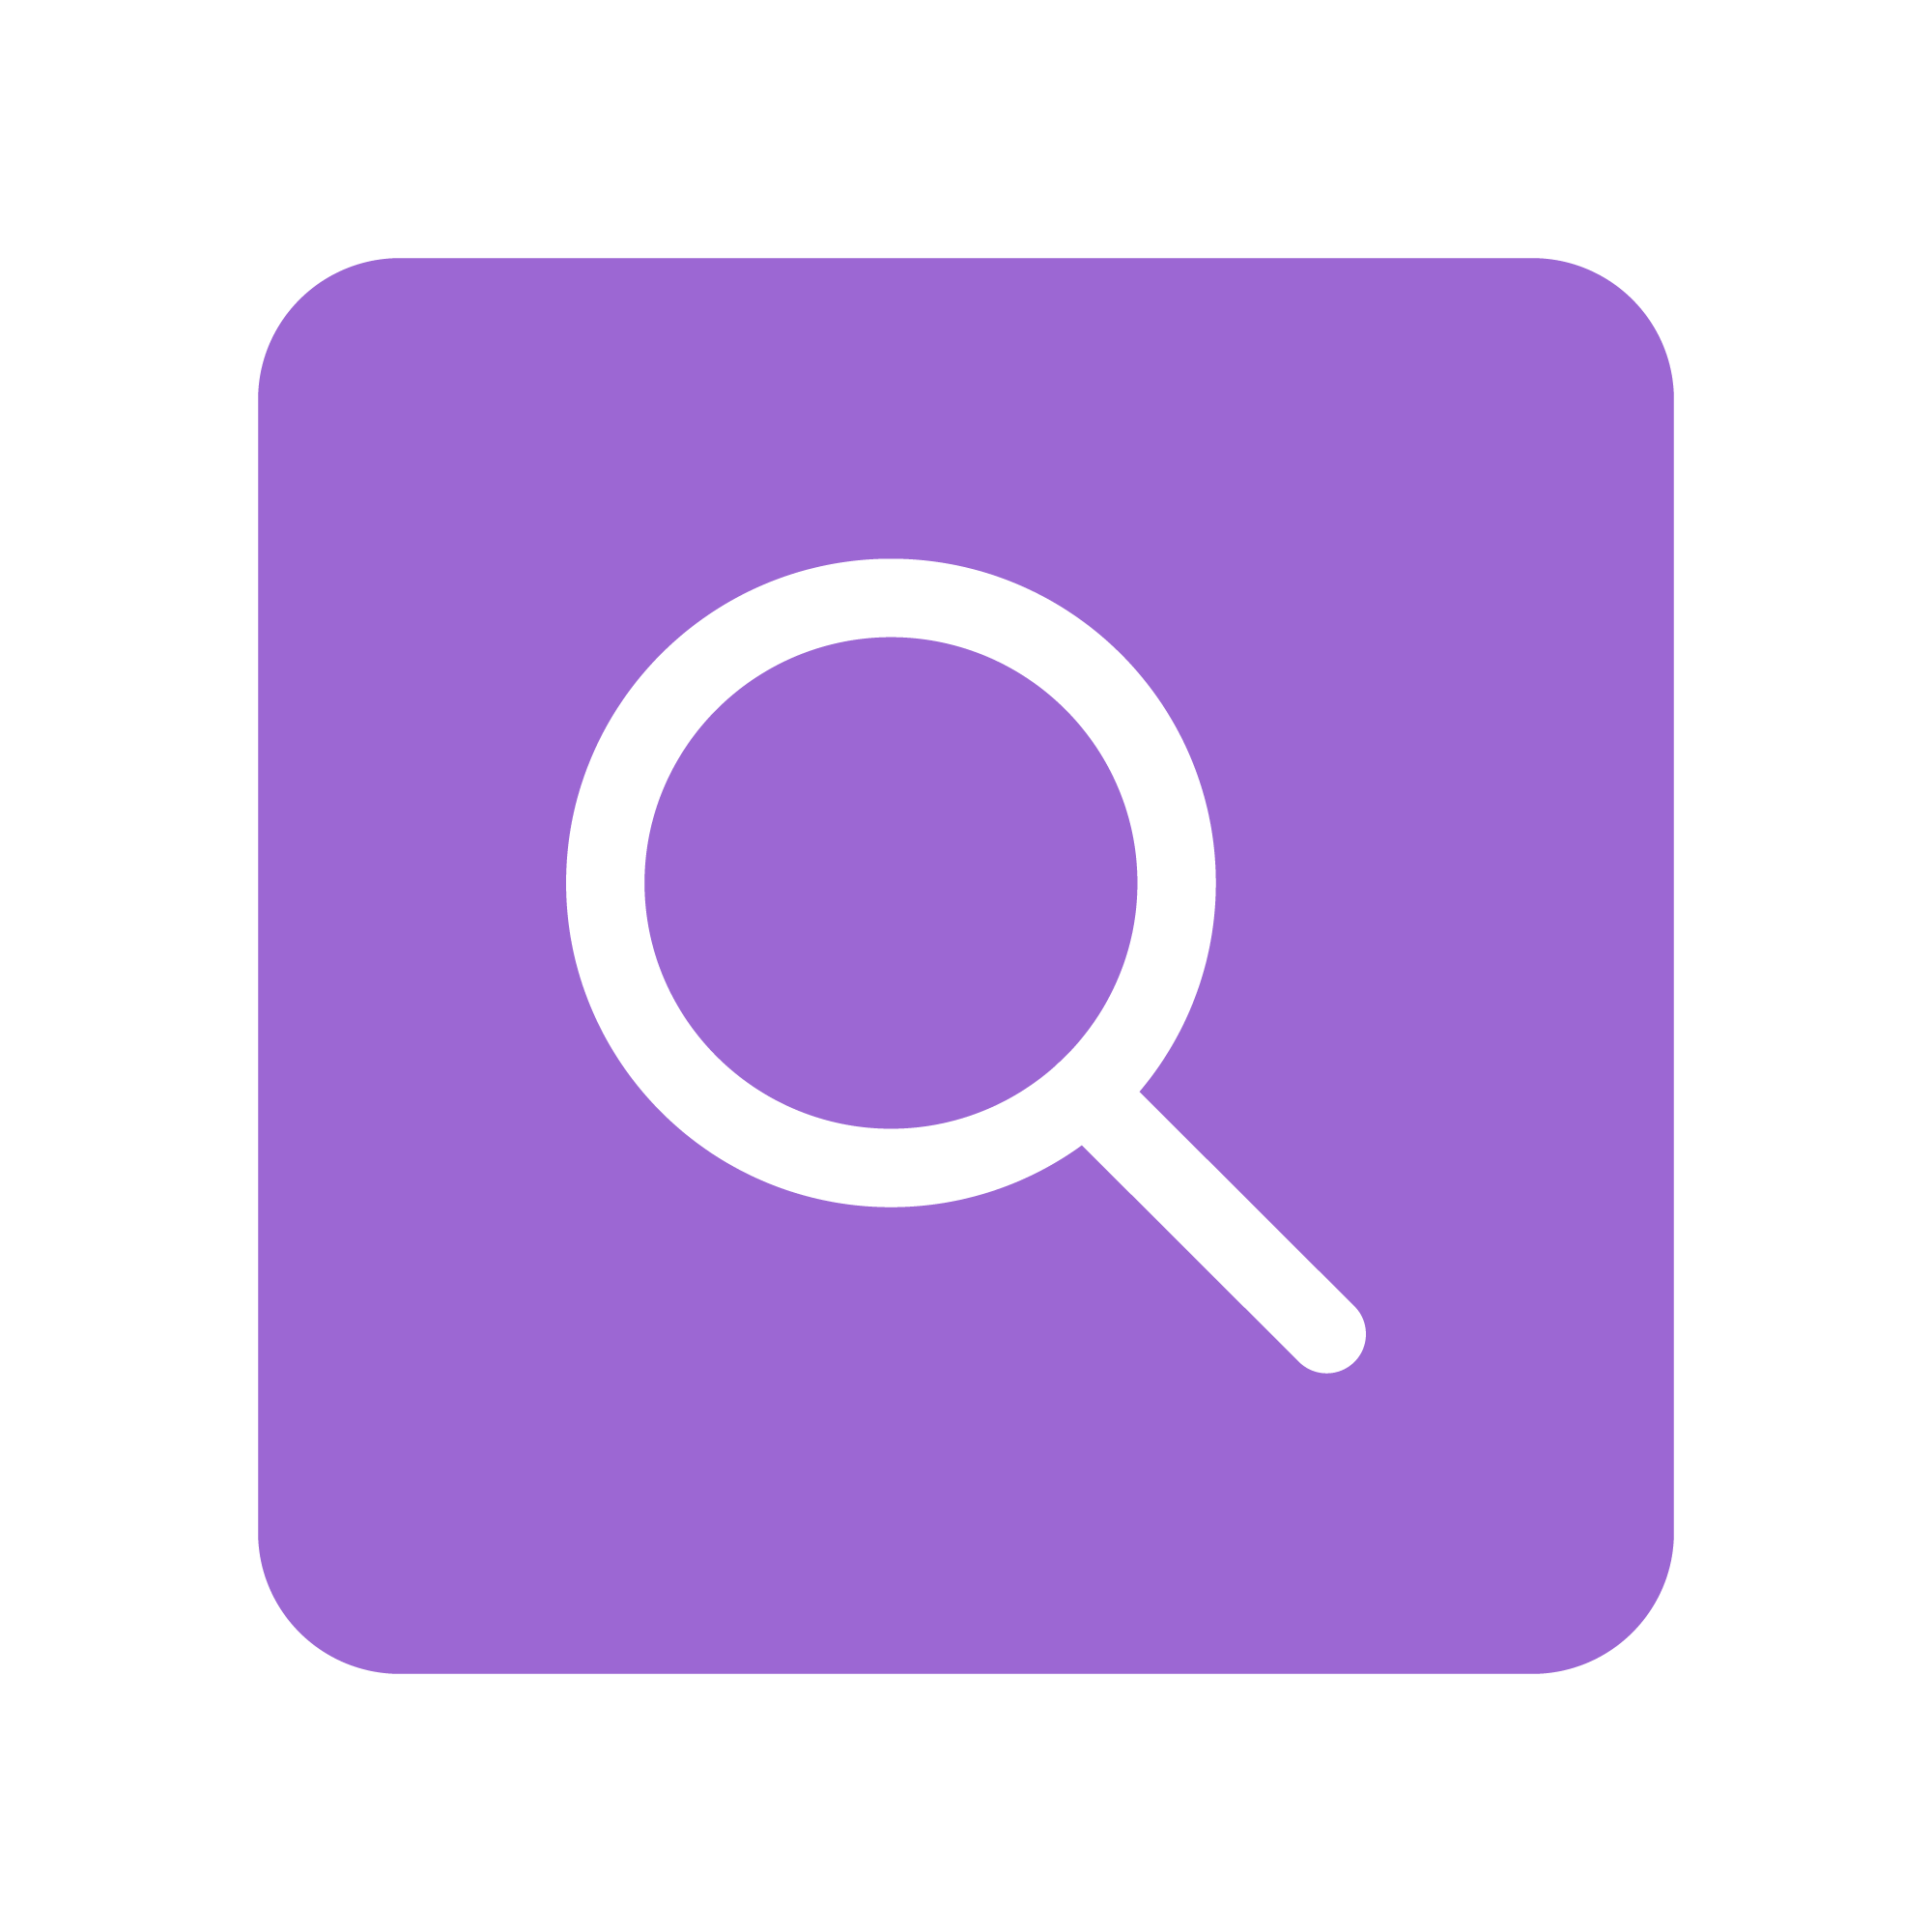 Purple square icon with white search symbol